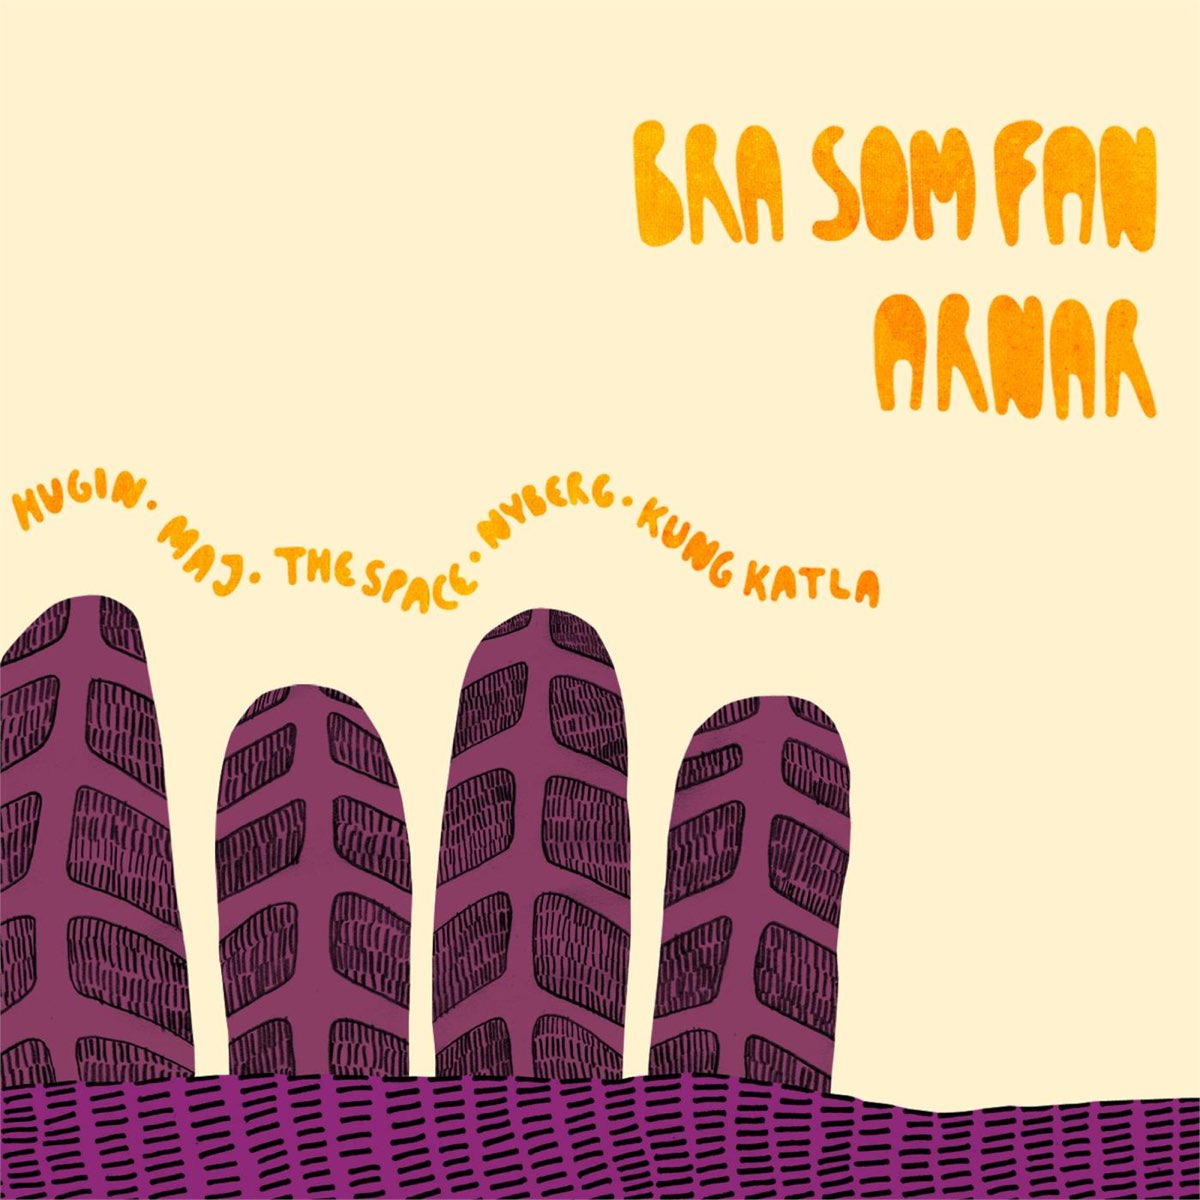 Bra Som Fan (feat. Hugin, M.A.J., The Space, & Kung Katla) by Arnar on Apple Music